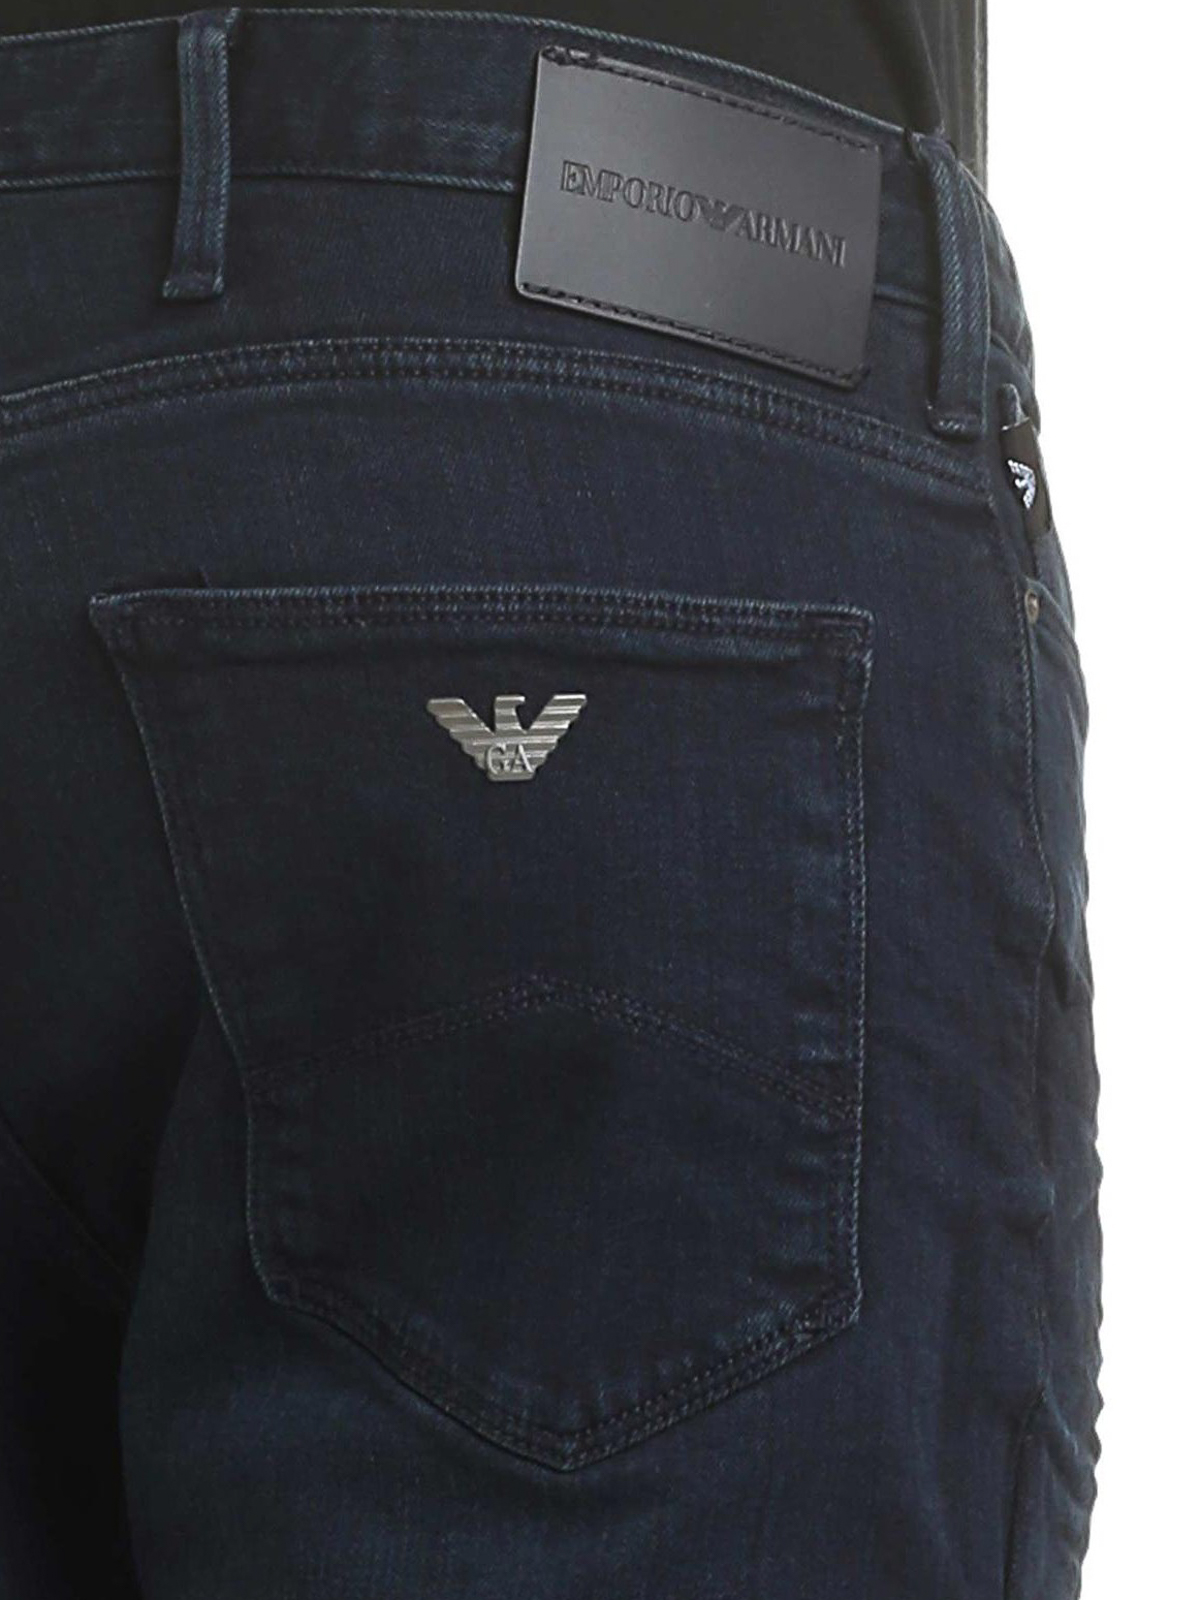 leg jeans Armani - Logo denim -